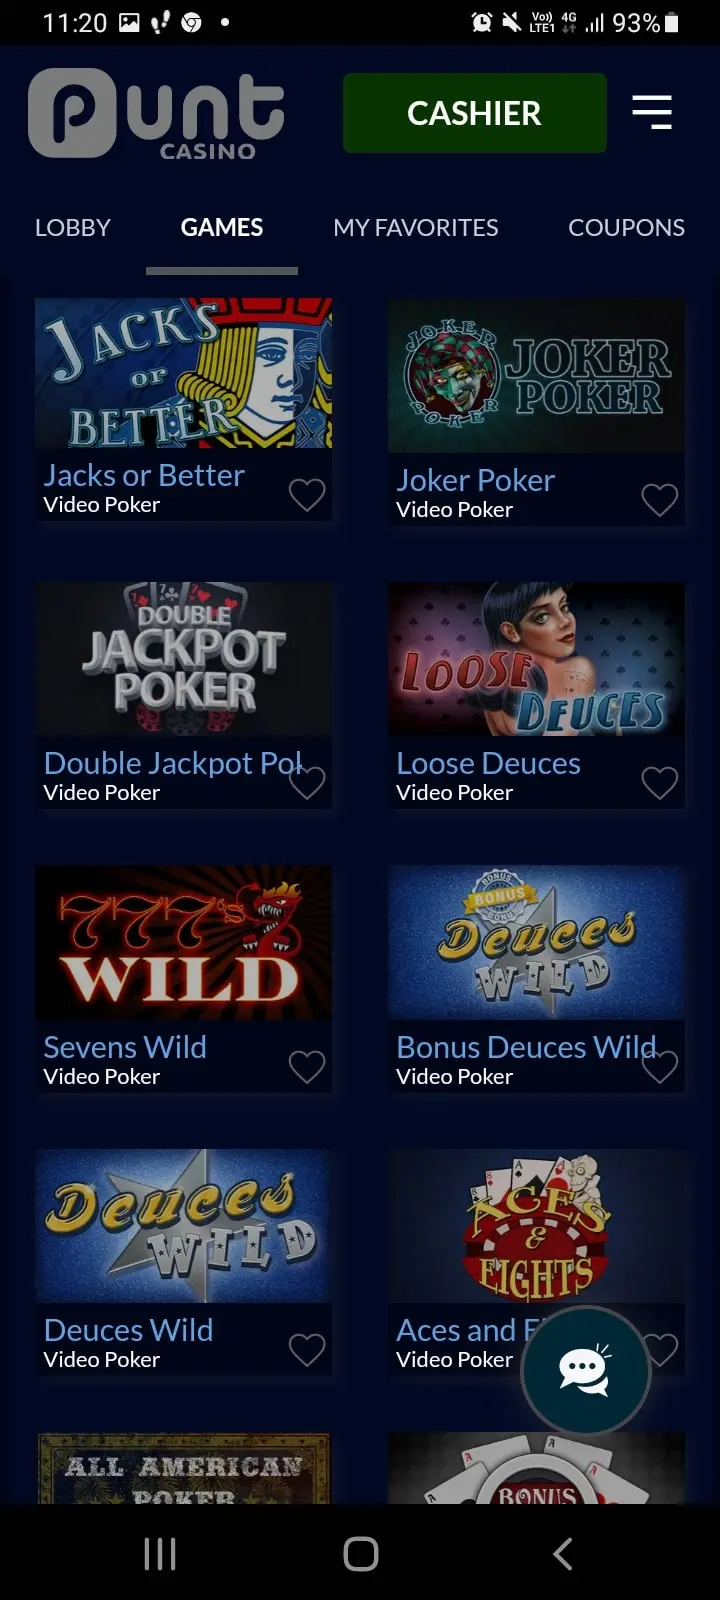 punt casino app screenshot 6